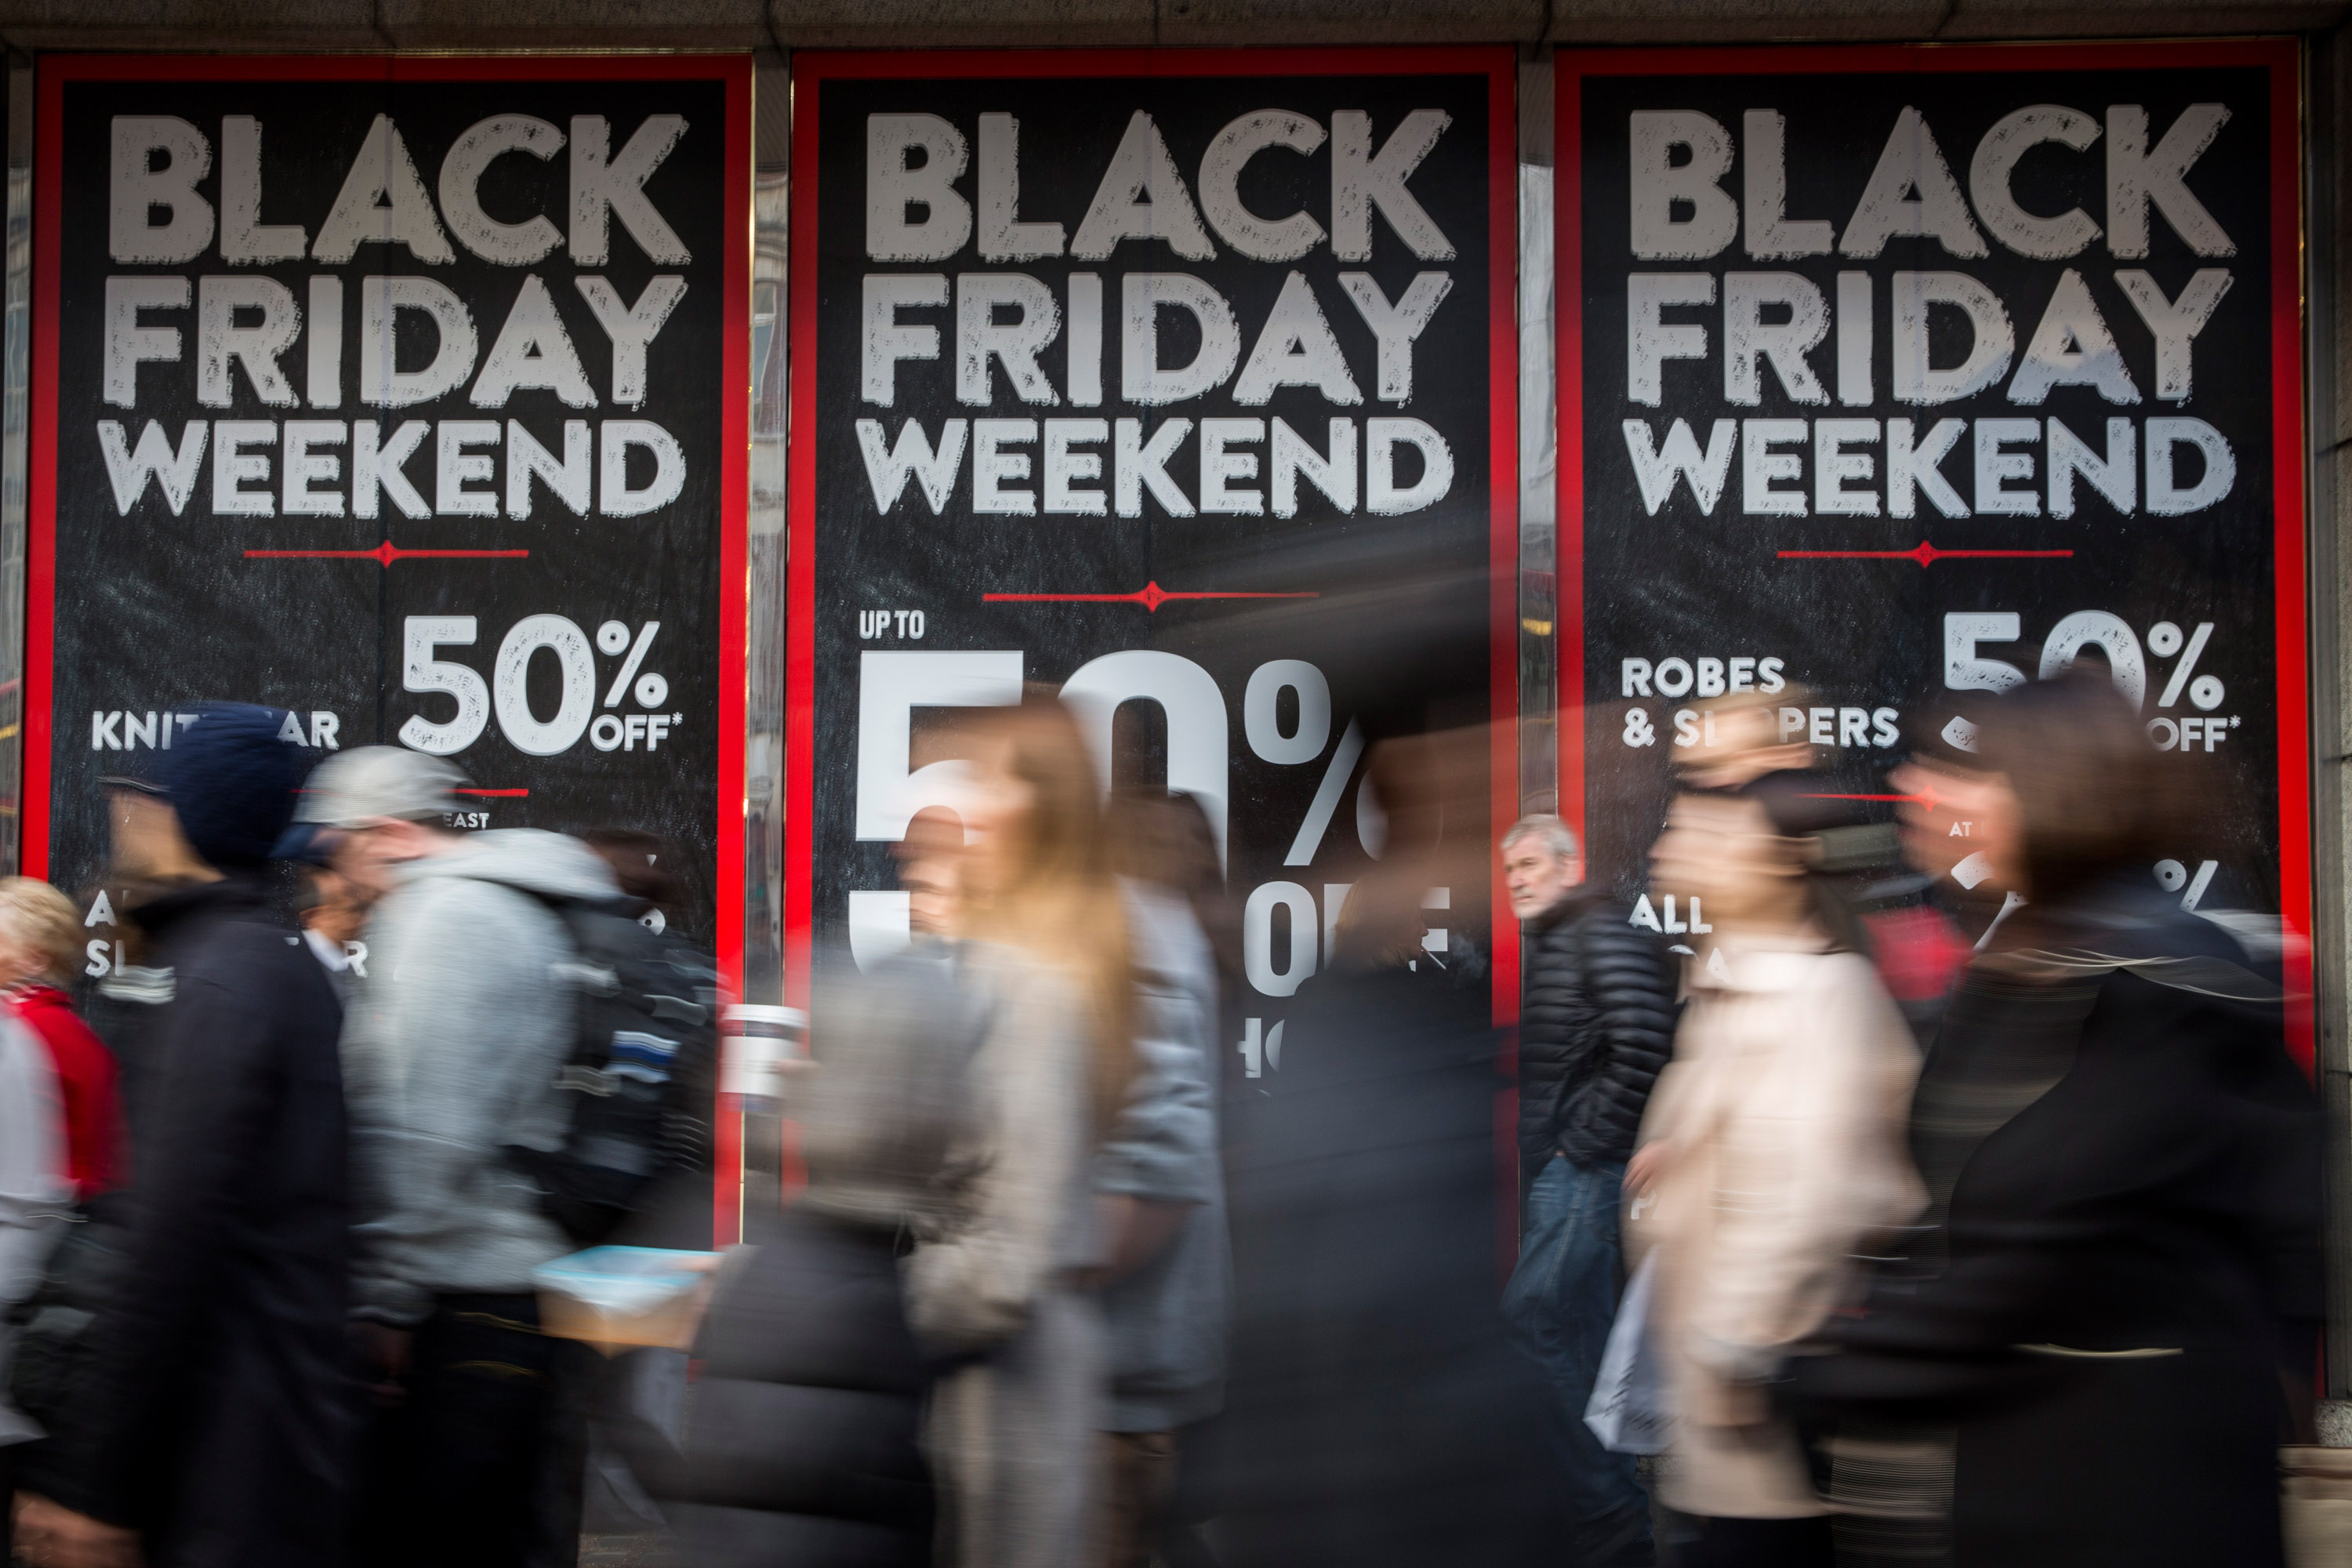 Петъкът след Деня на благодарността в САЩ е т.нар. "Black Friday" - официално откриване на коледния пазарен сезон и повод за големи отстъпки в търговските вериги. Комбинацията води до истерично пазаруване, на което можем да си изберем с какво око да гледаме